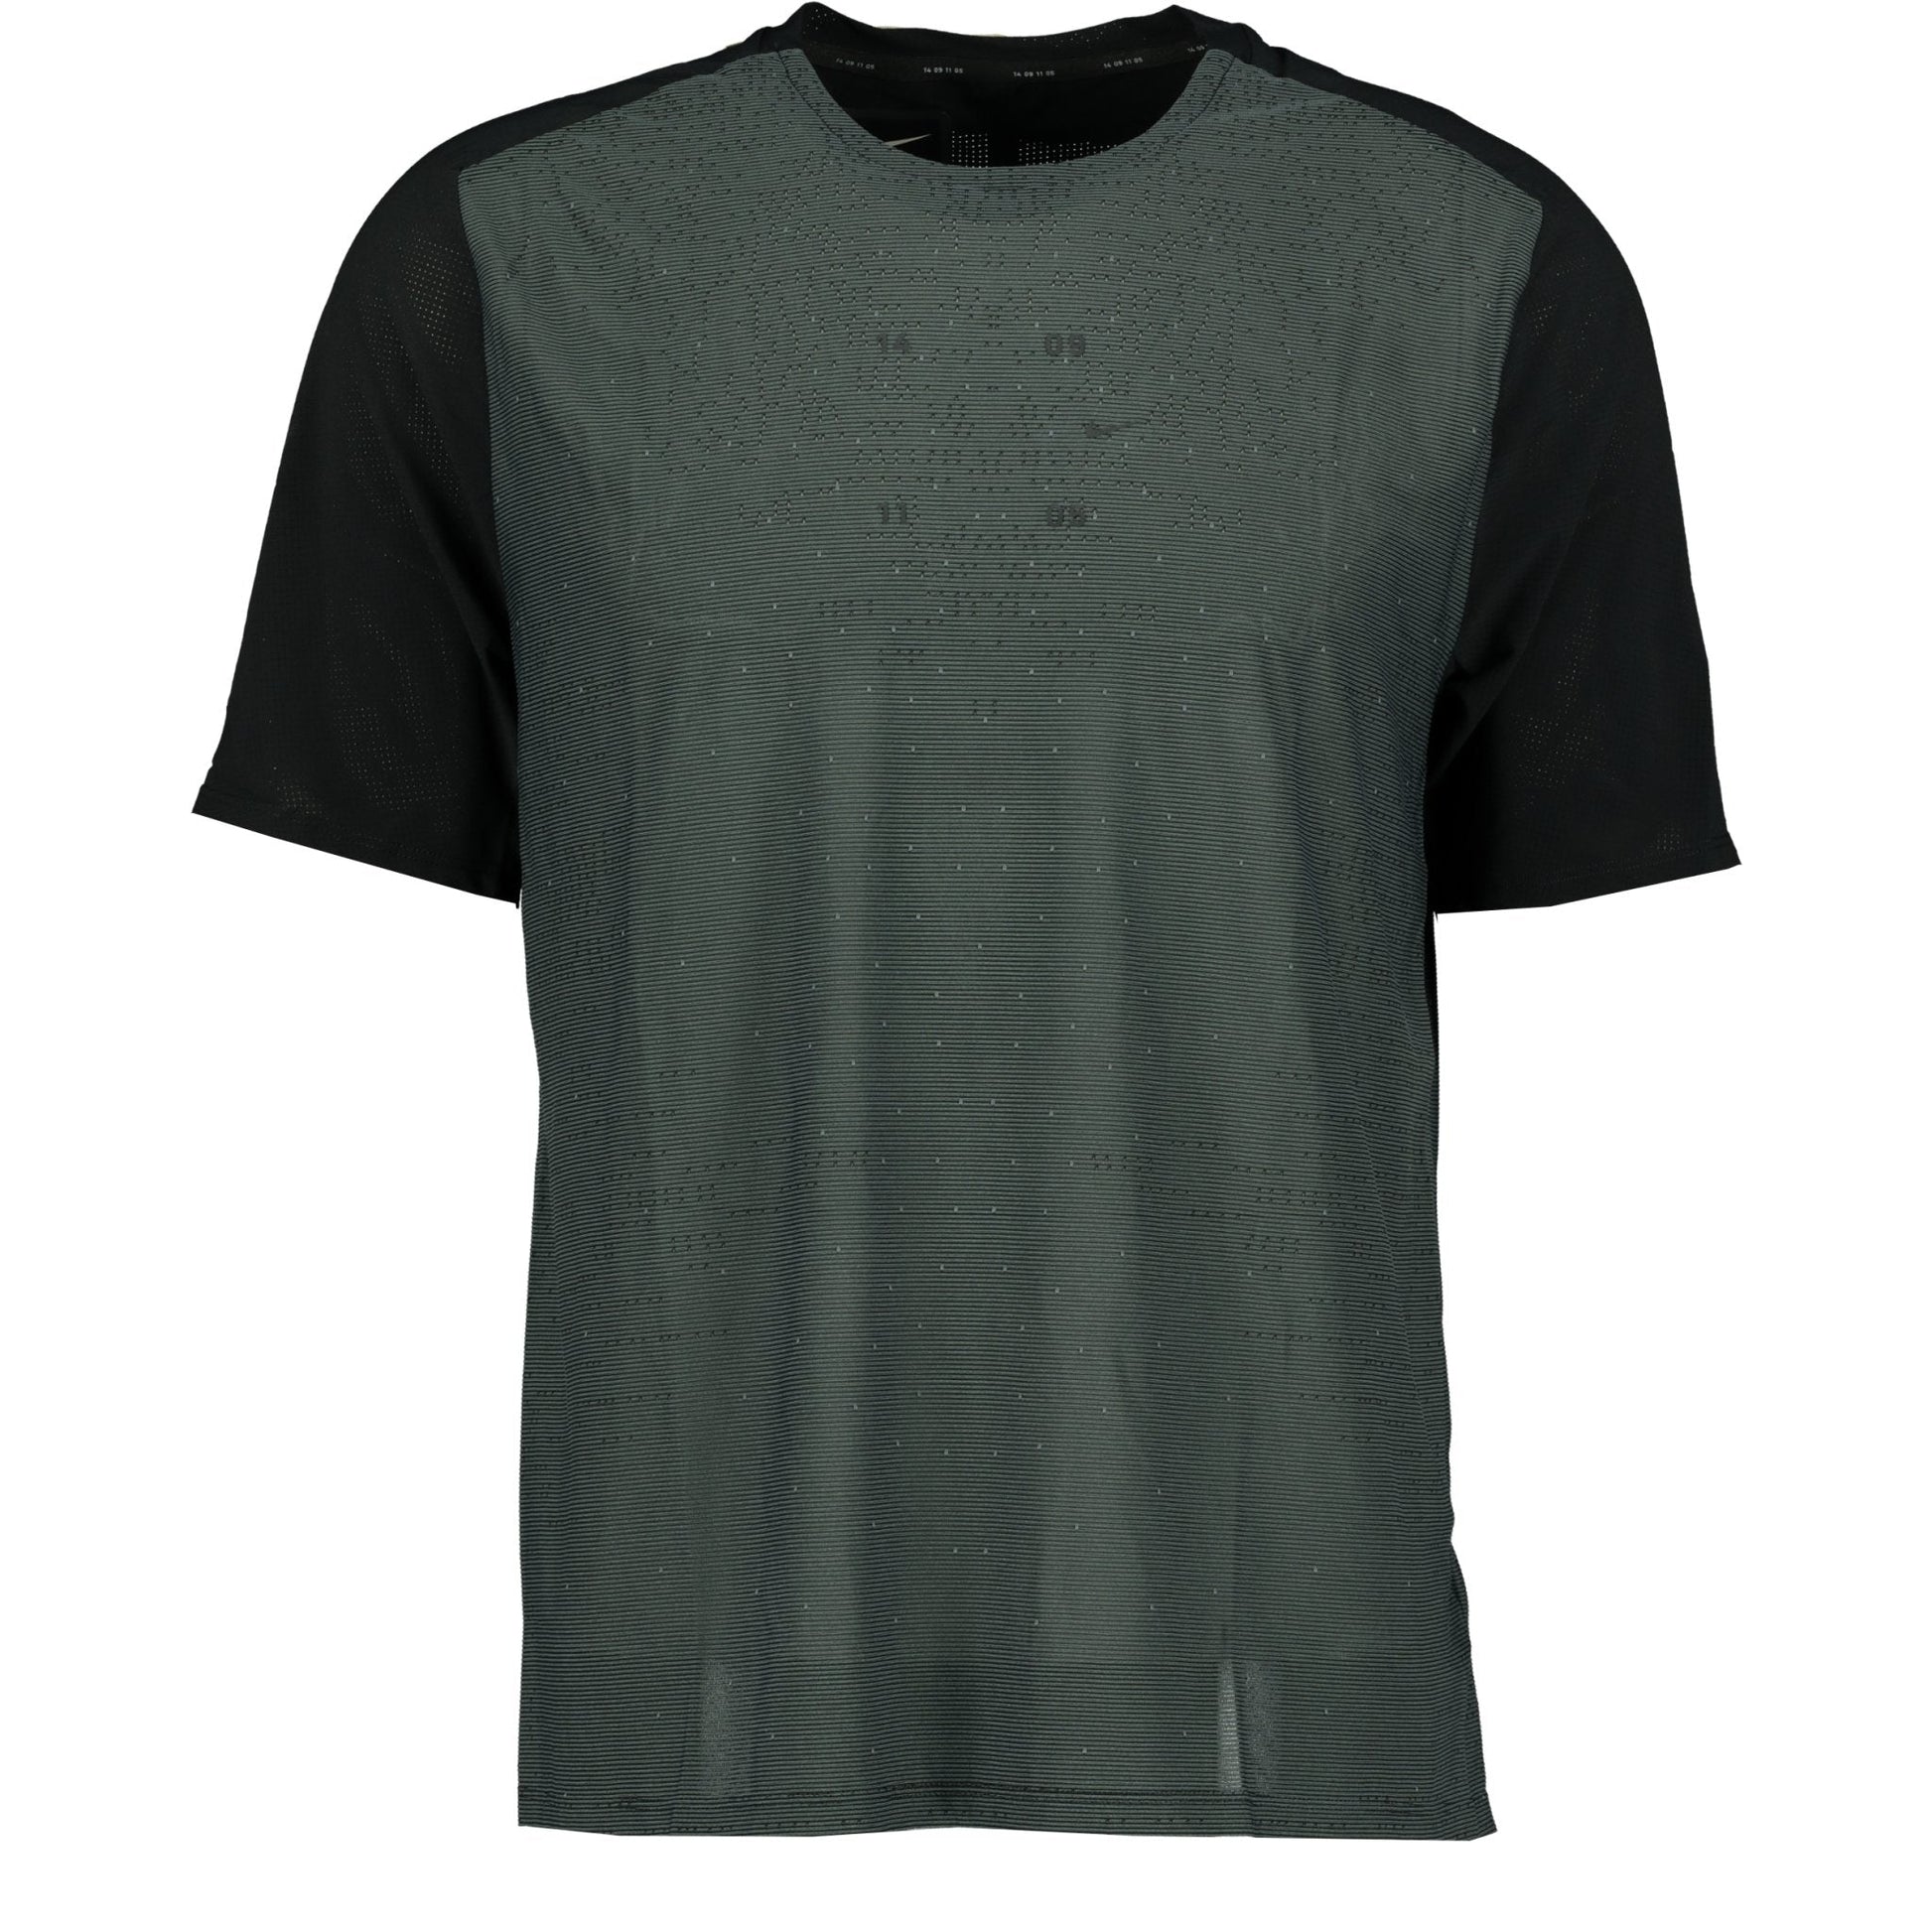 Nike Dri-Fit Tech Pack T-Shirt Grey & Black - LinkFashionco